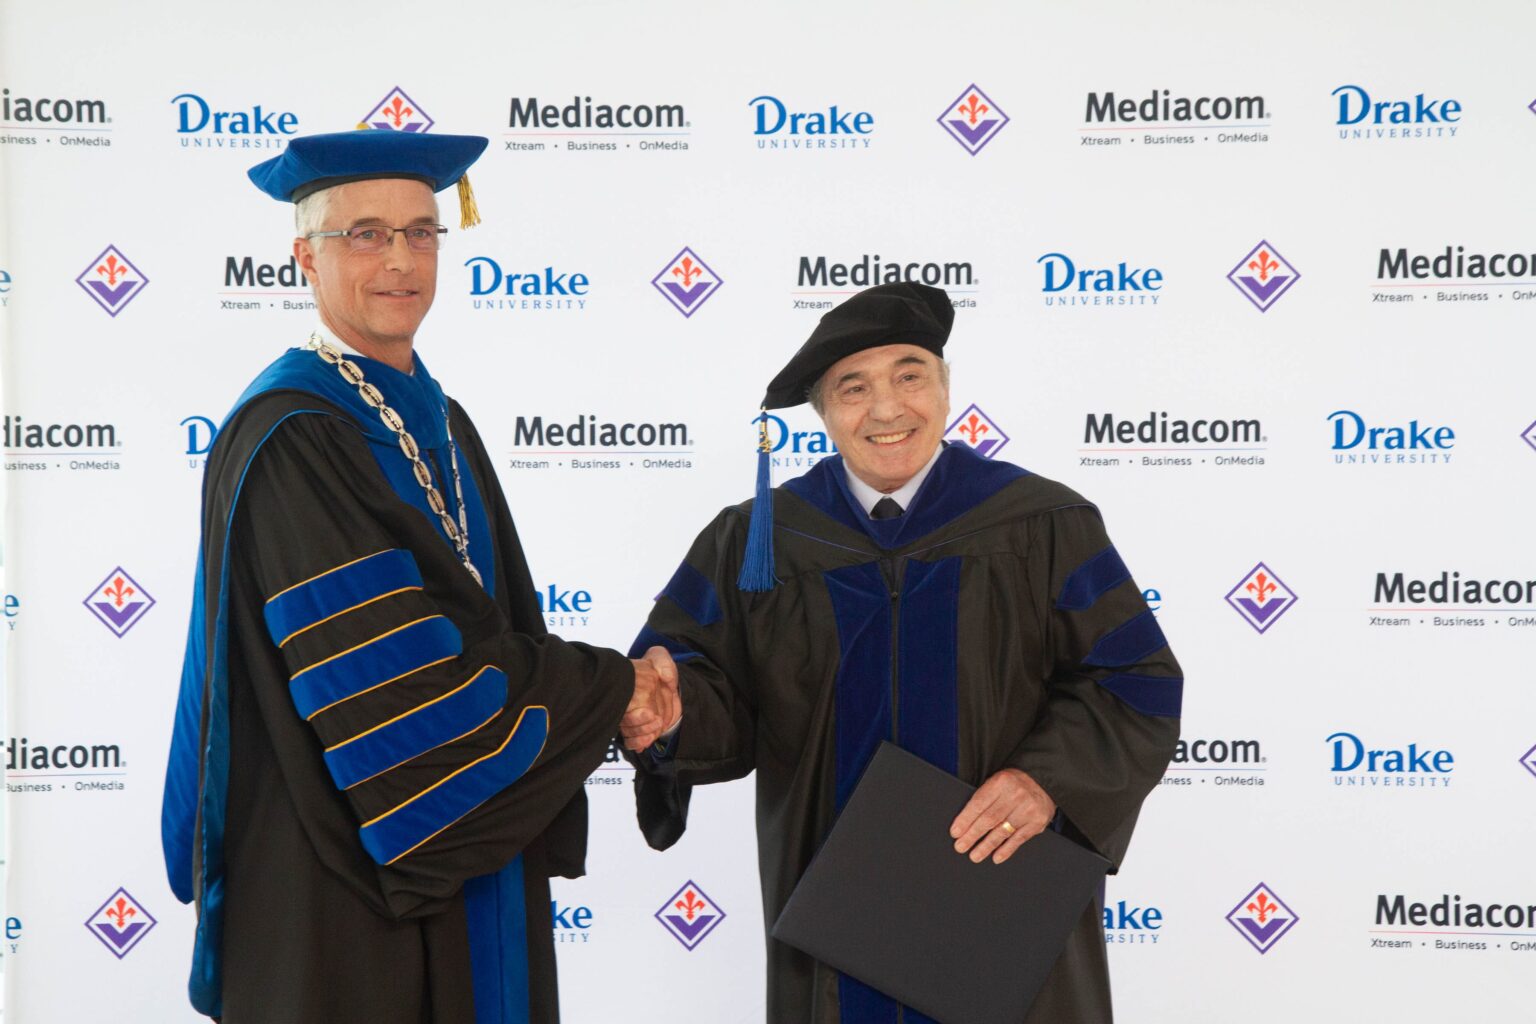 Drake University Awards Honorary Degree to Mediacom CEO Rocco B. Commisso